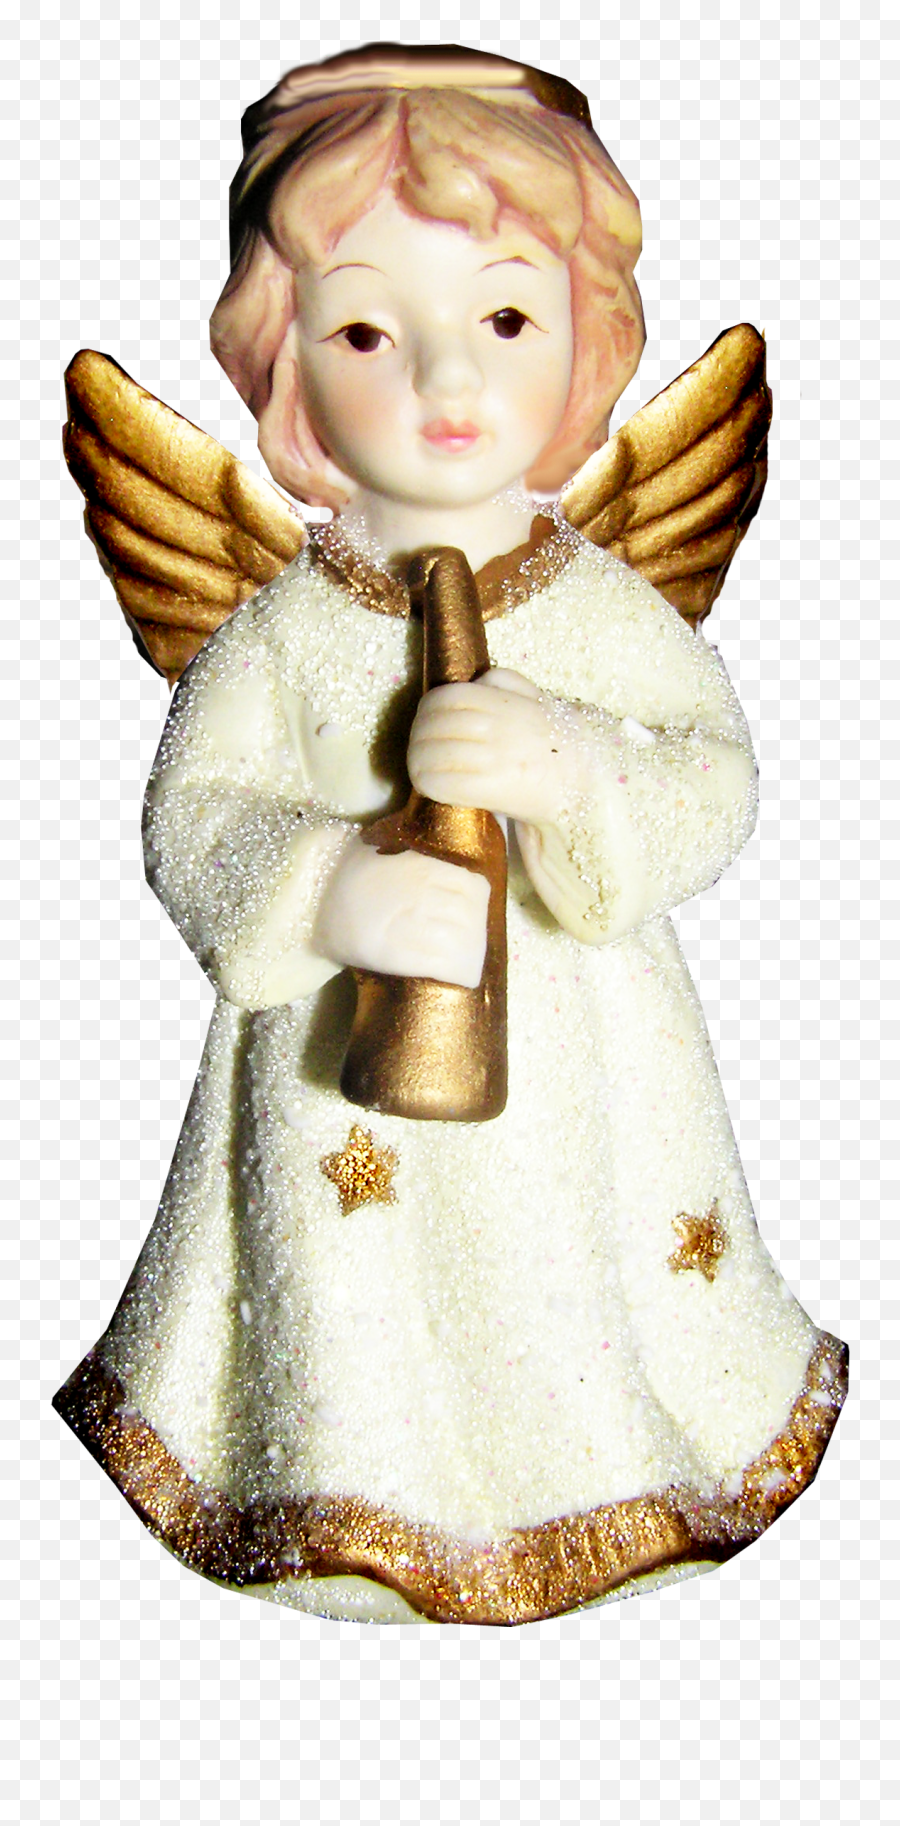 Little Angel Png Image - Angel Emoji,Angel Png